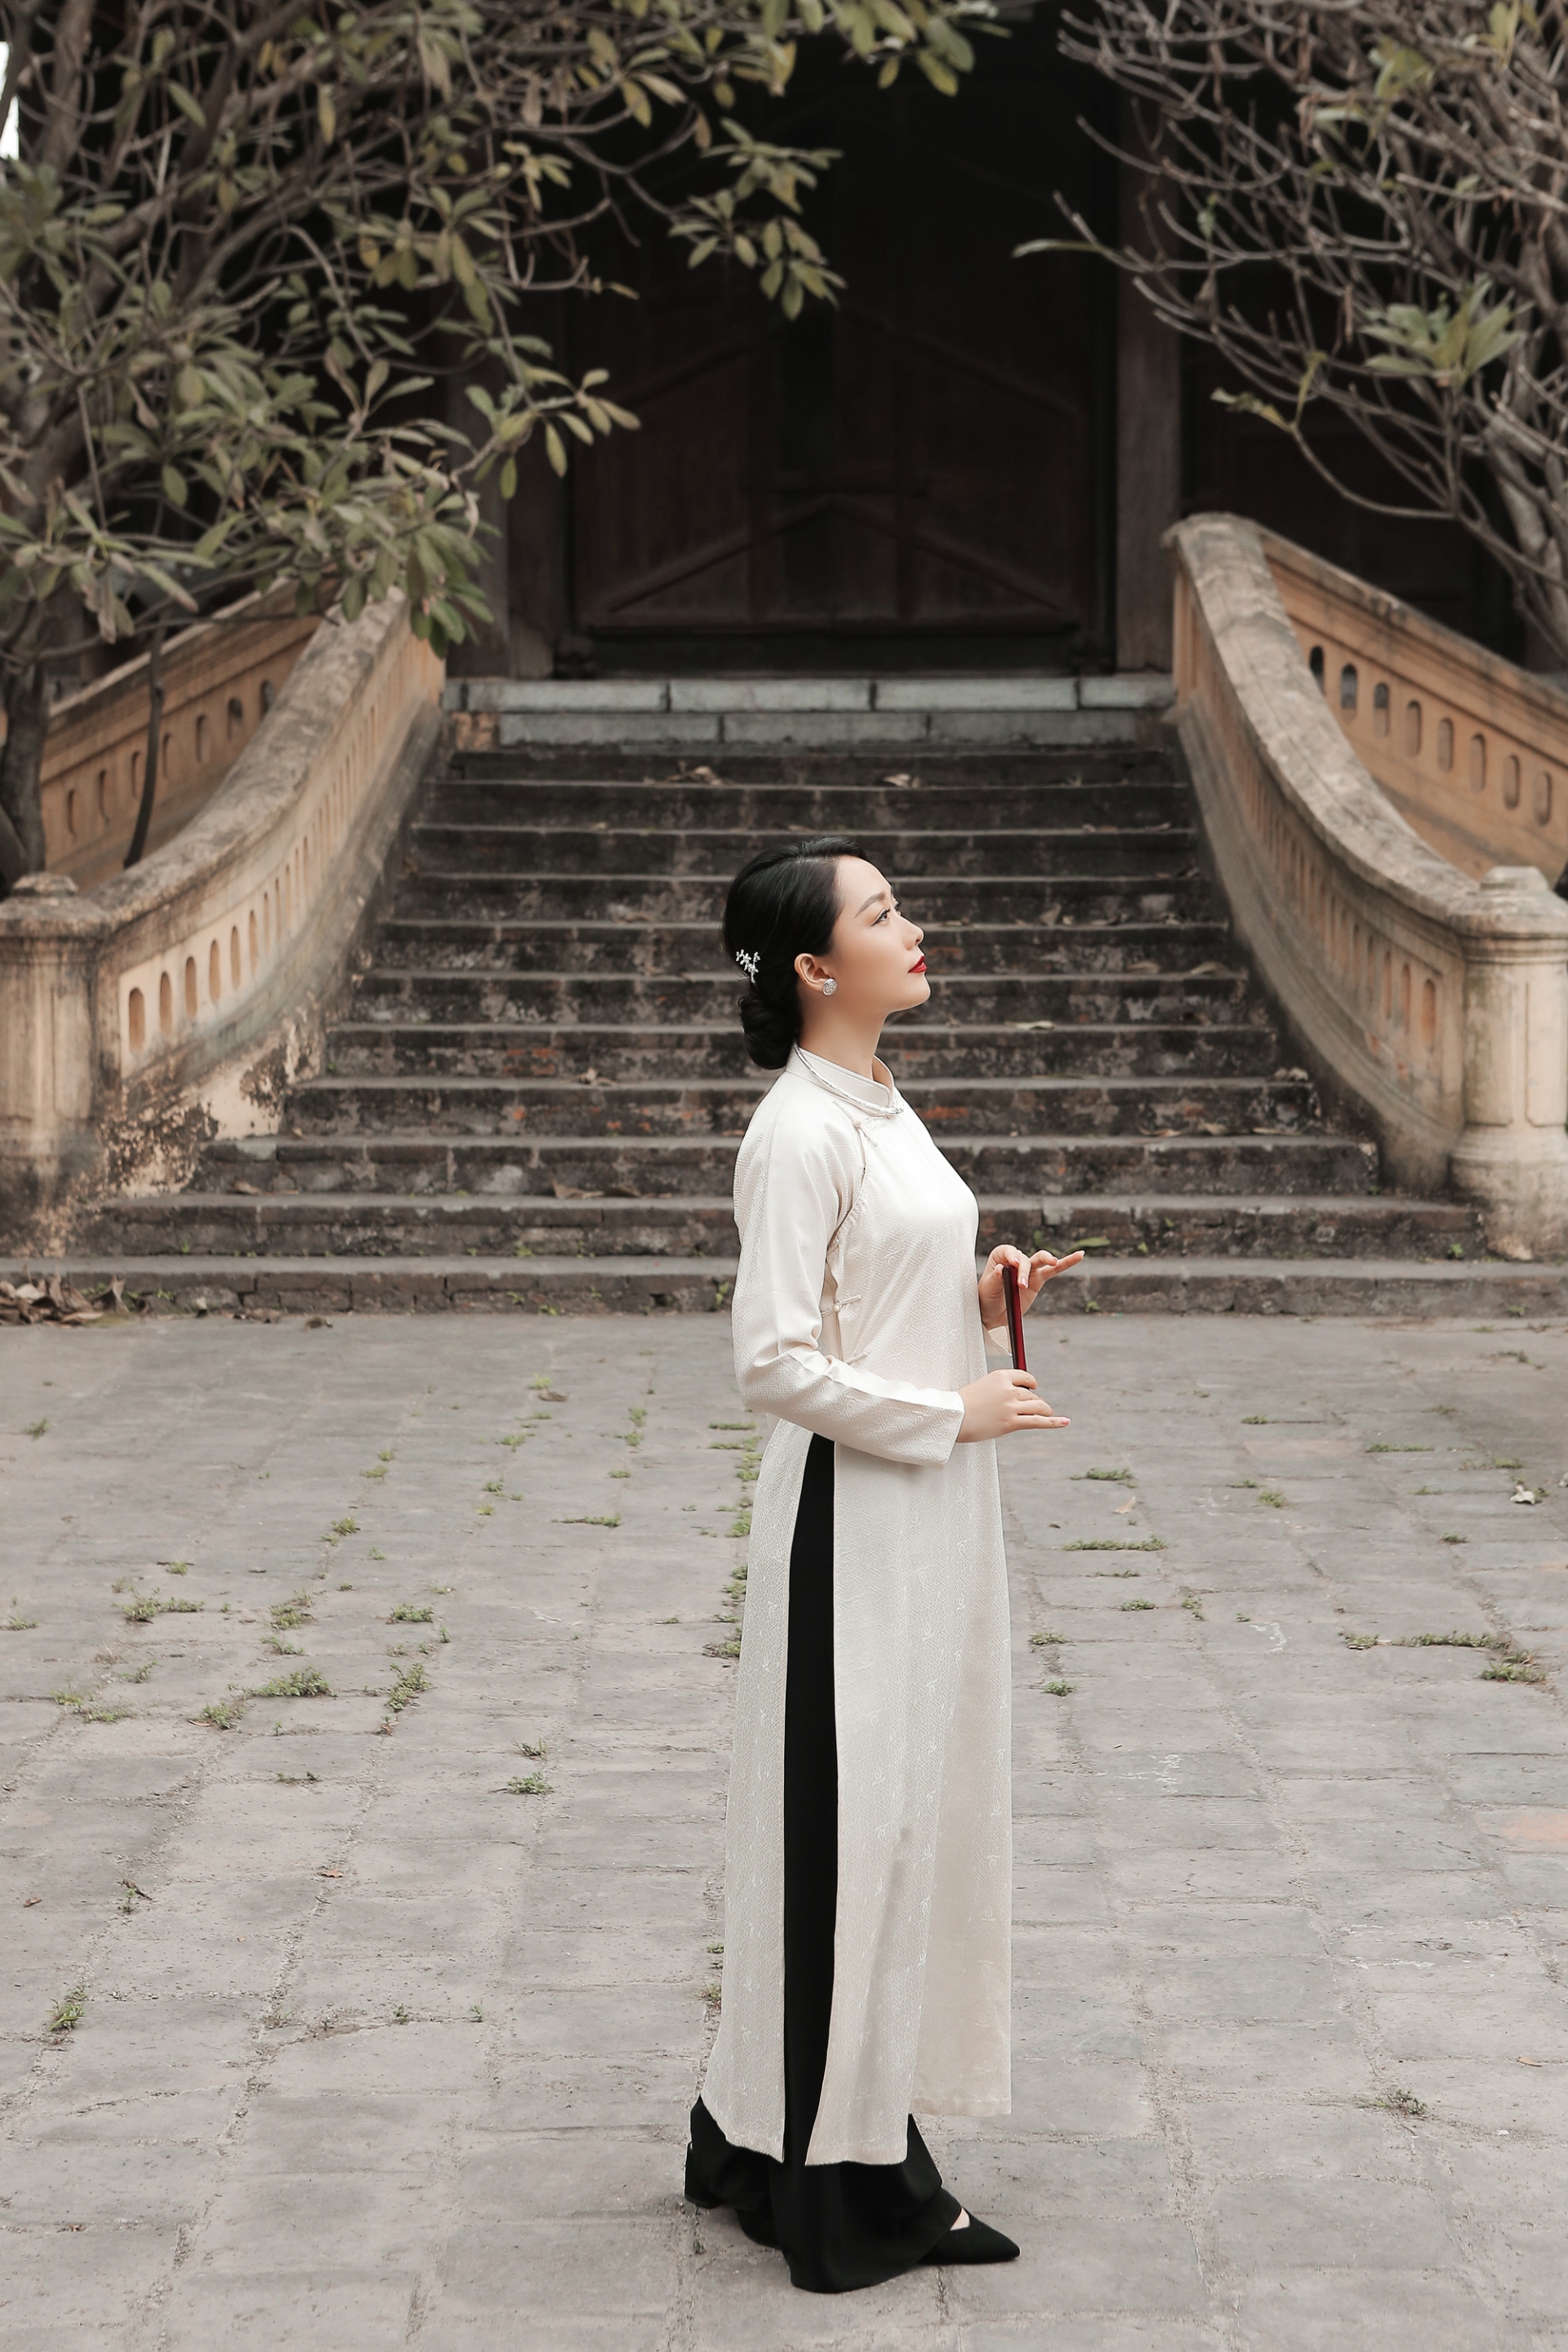 Hình ảnh sang trọng, truyền thống của phụ nữ Việt qua tà áo dài được BTV thể hiện rất tốt từ dáng vẻ đến thần thái, cử chỉ.